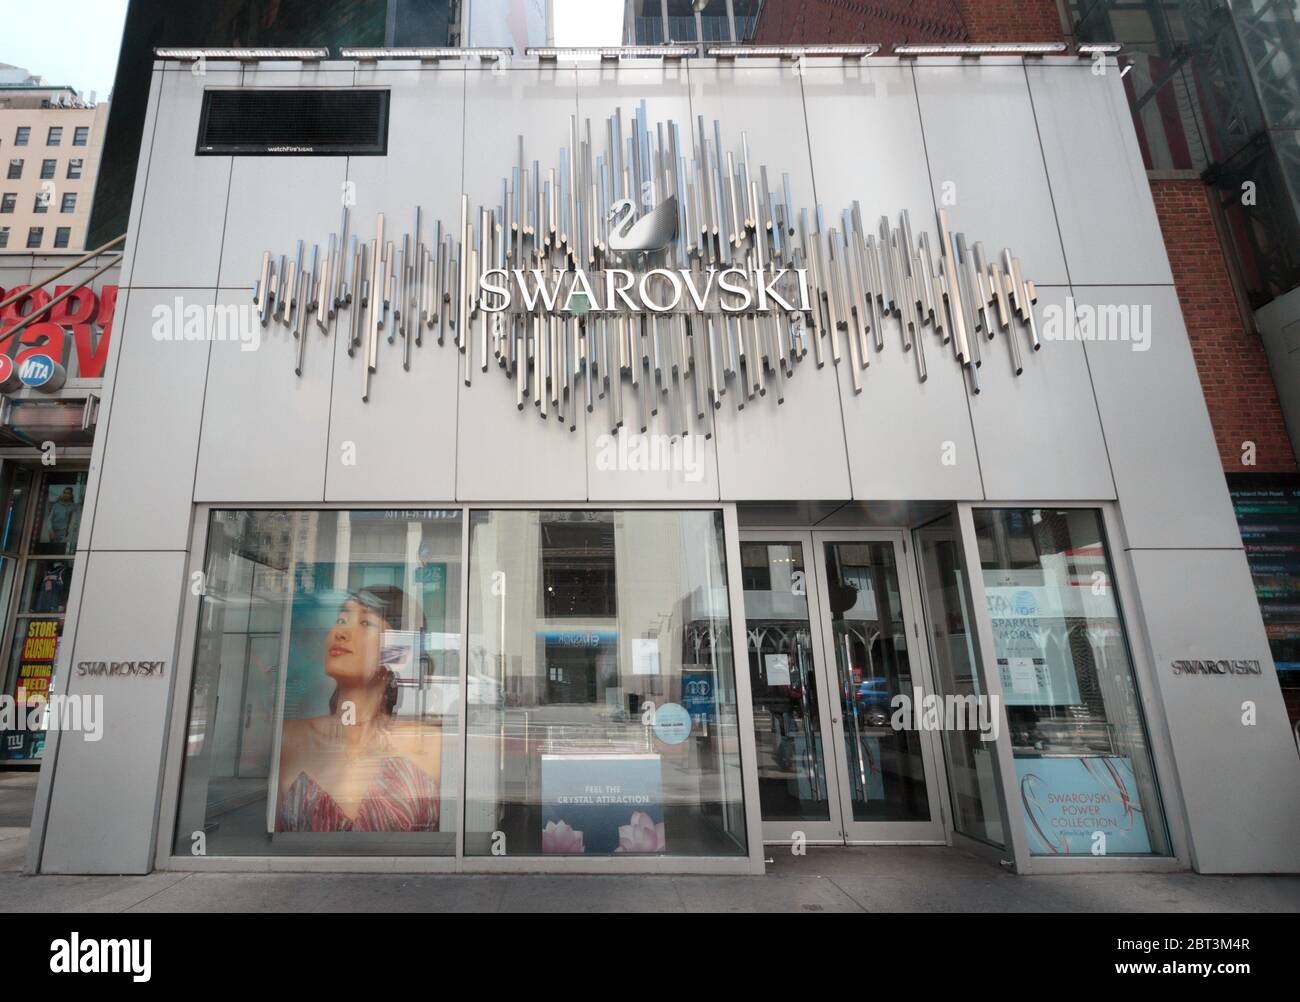 Swarovski-Geschäft außerhalb der Penn Station in Manhattan. Swarovski ist ein österreichischer Hersteller von Glas- und Kristallornamenten, Schmuck und dekorativen Objekten Stockfoto